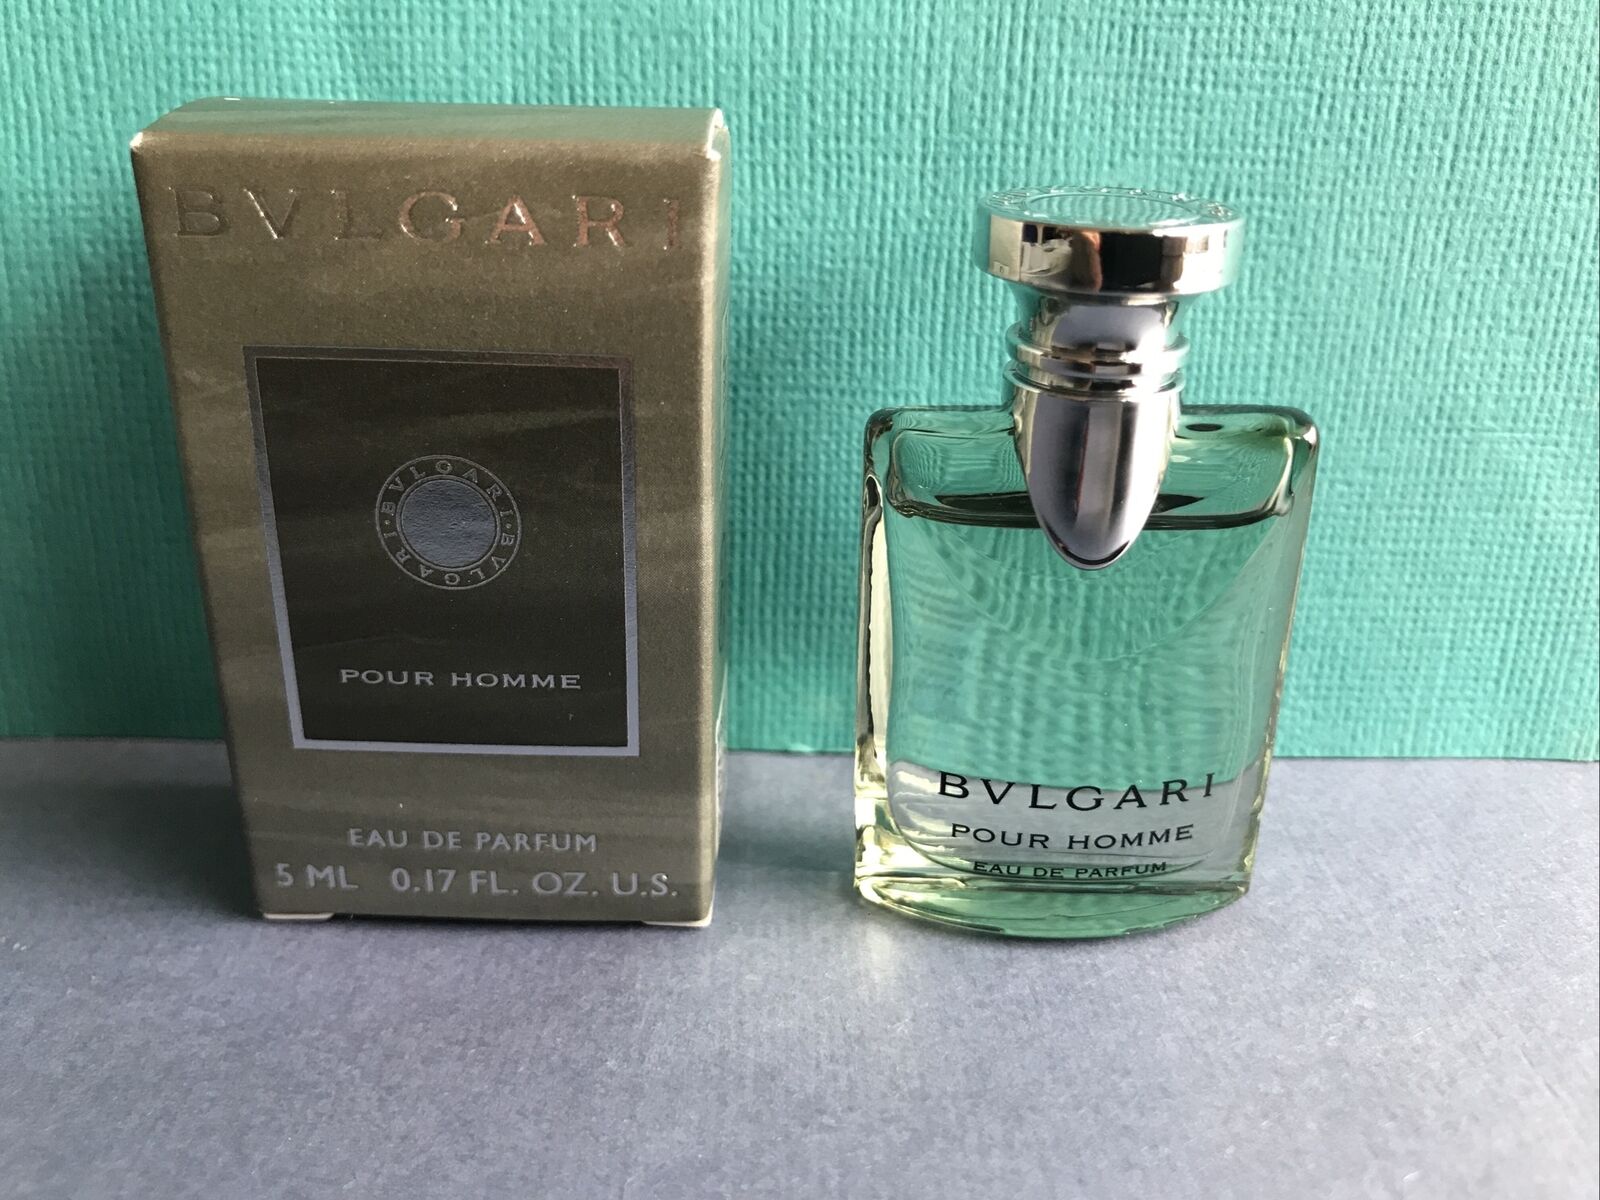 BVLGARI Pour Homme Eau de Parfum 5 ml Miniature Fragrance Perfume